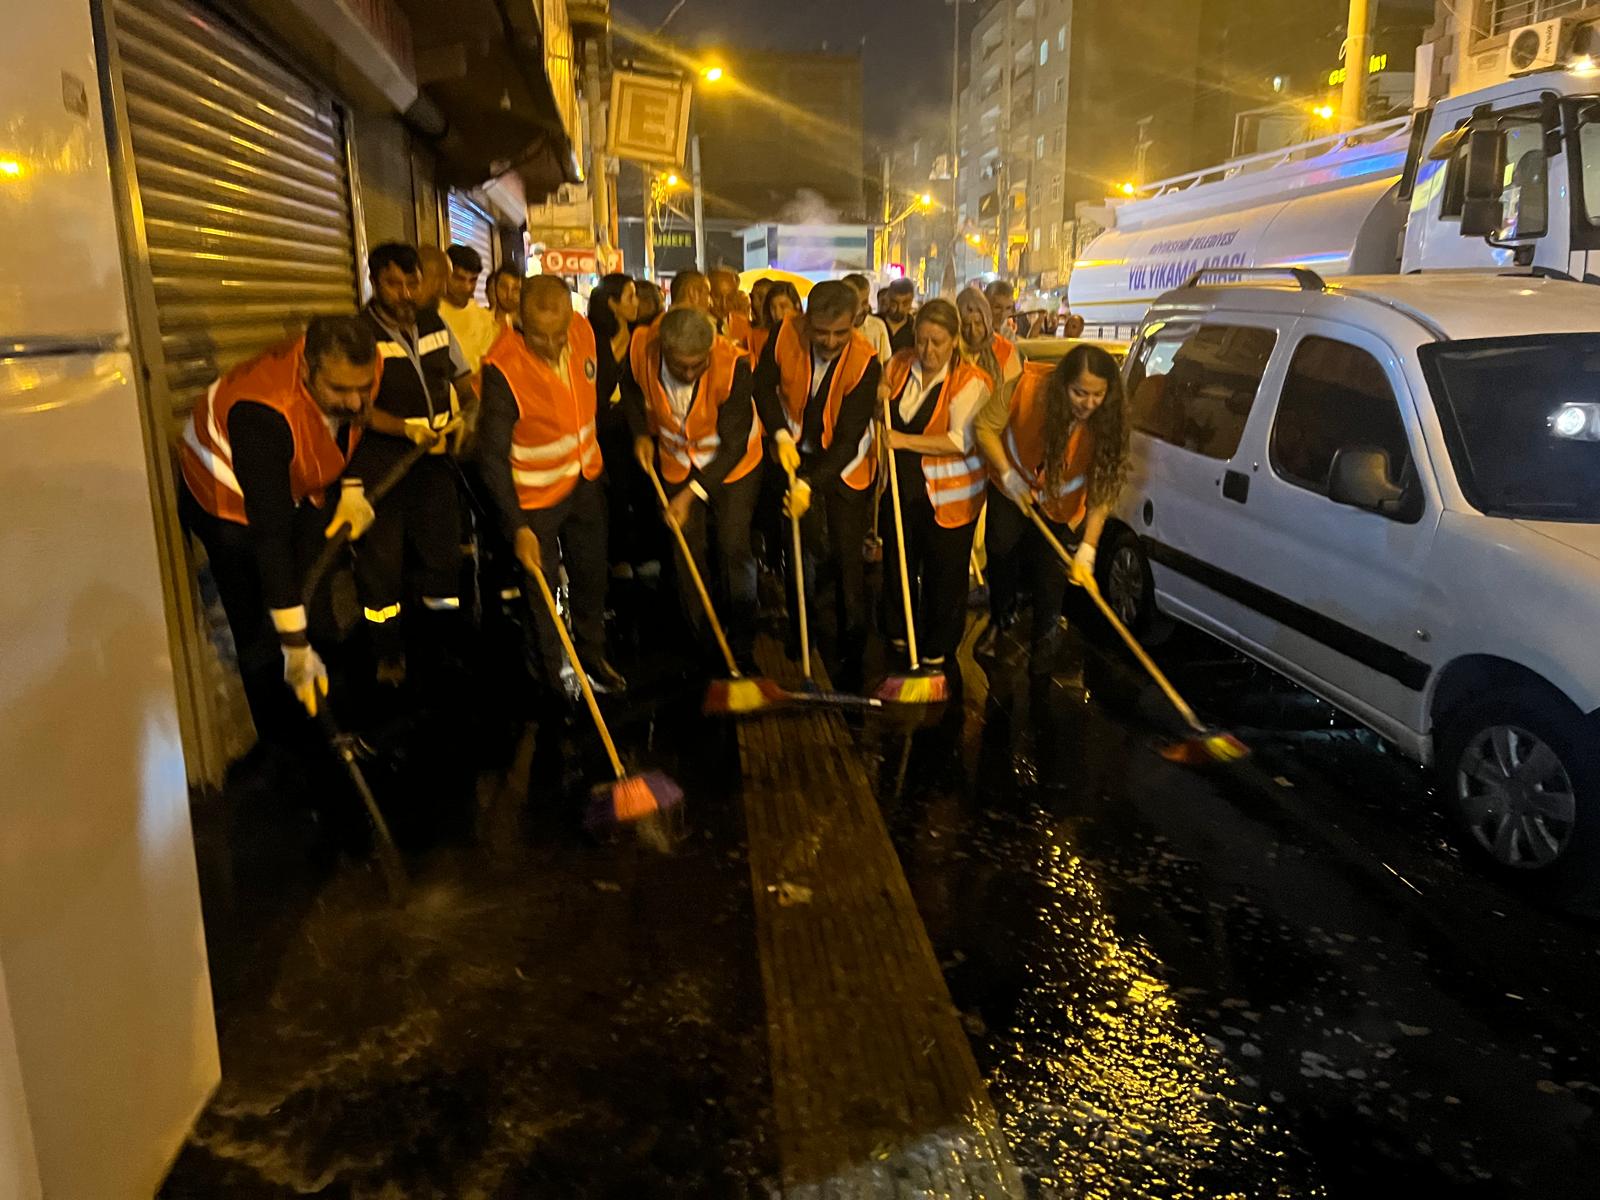 Diyarbakır Büyükşehir Belediyesi Eş Başkanları Bağlar’da caddeleri temizledi